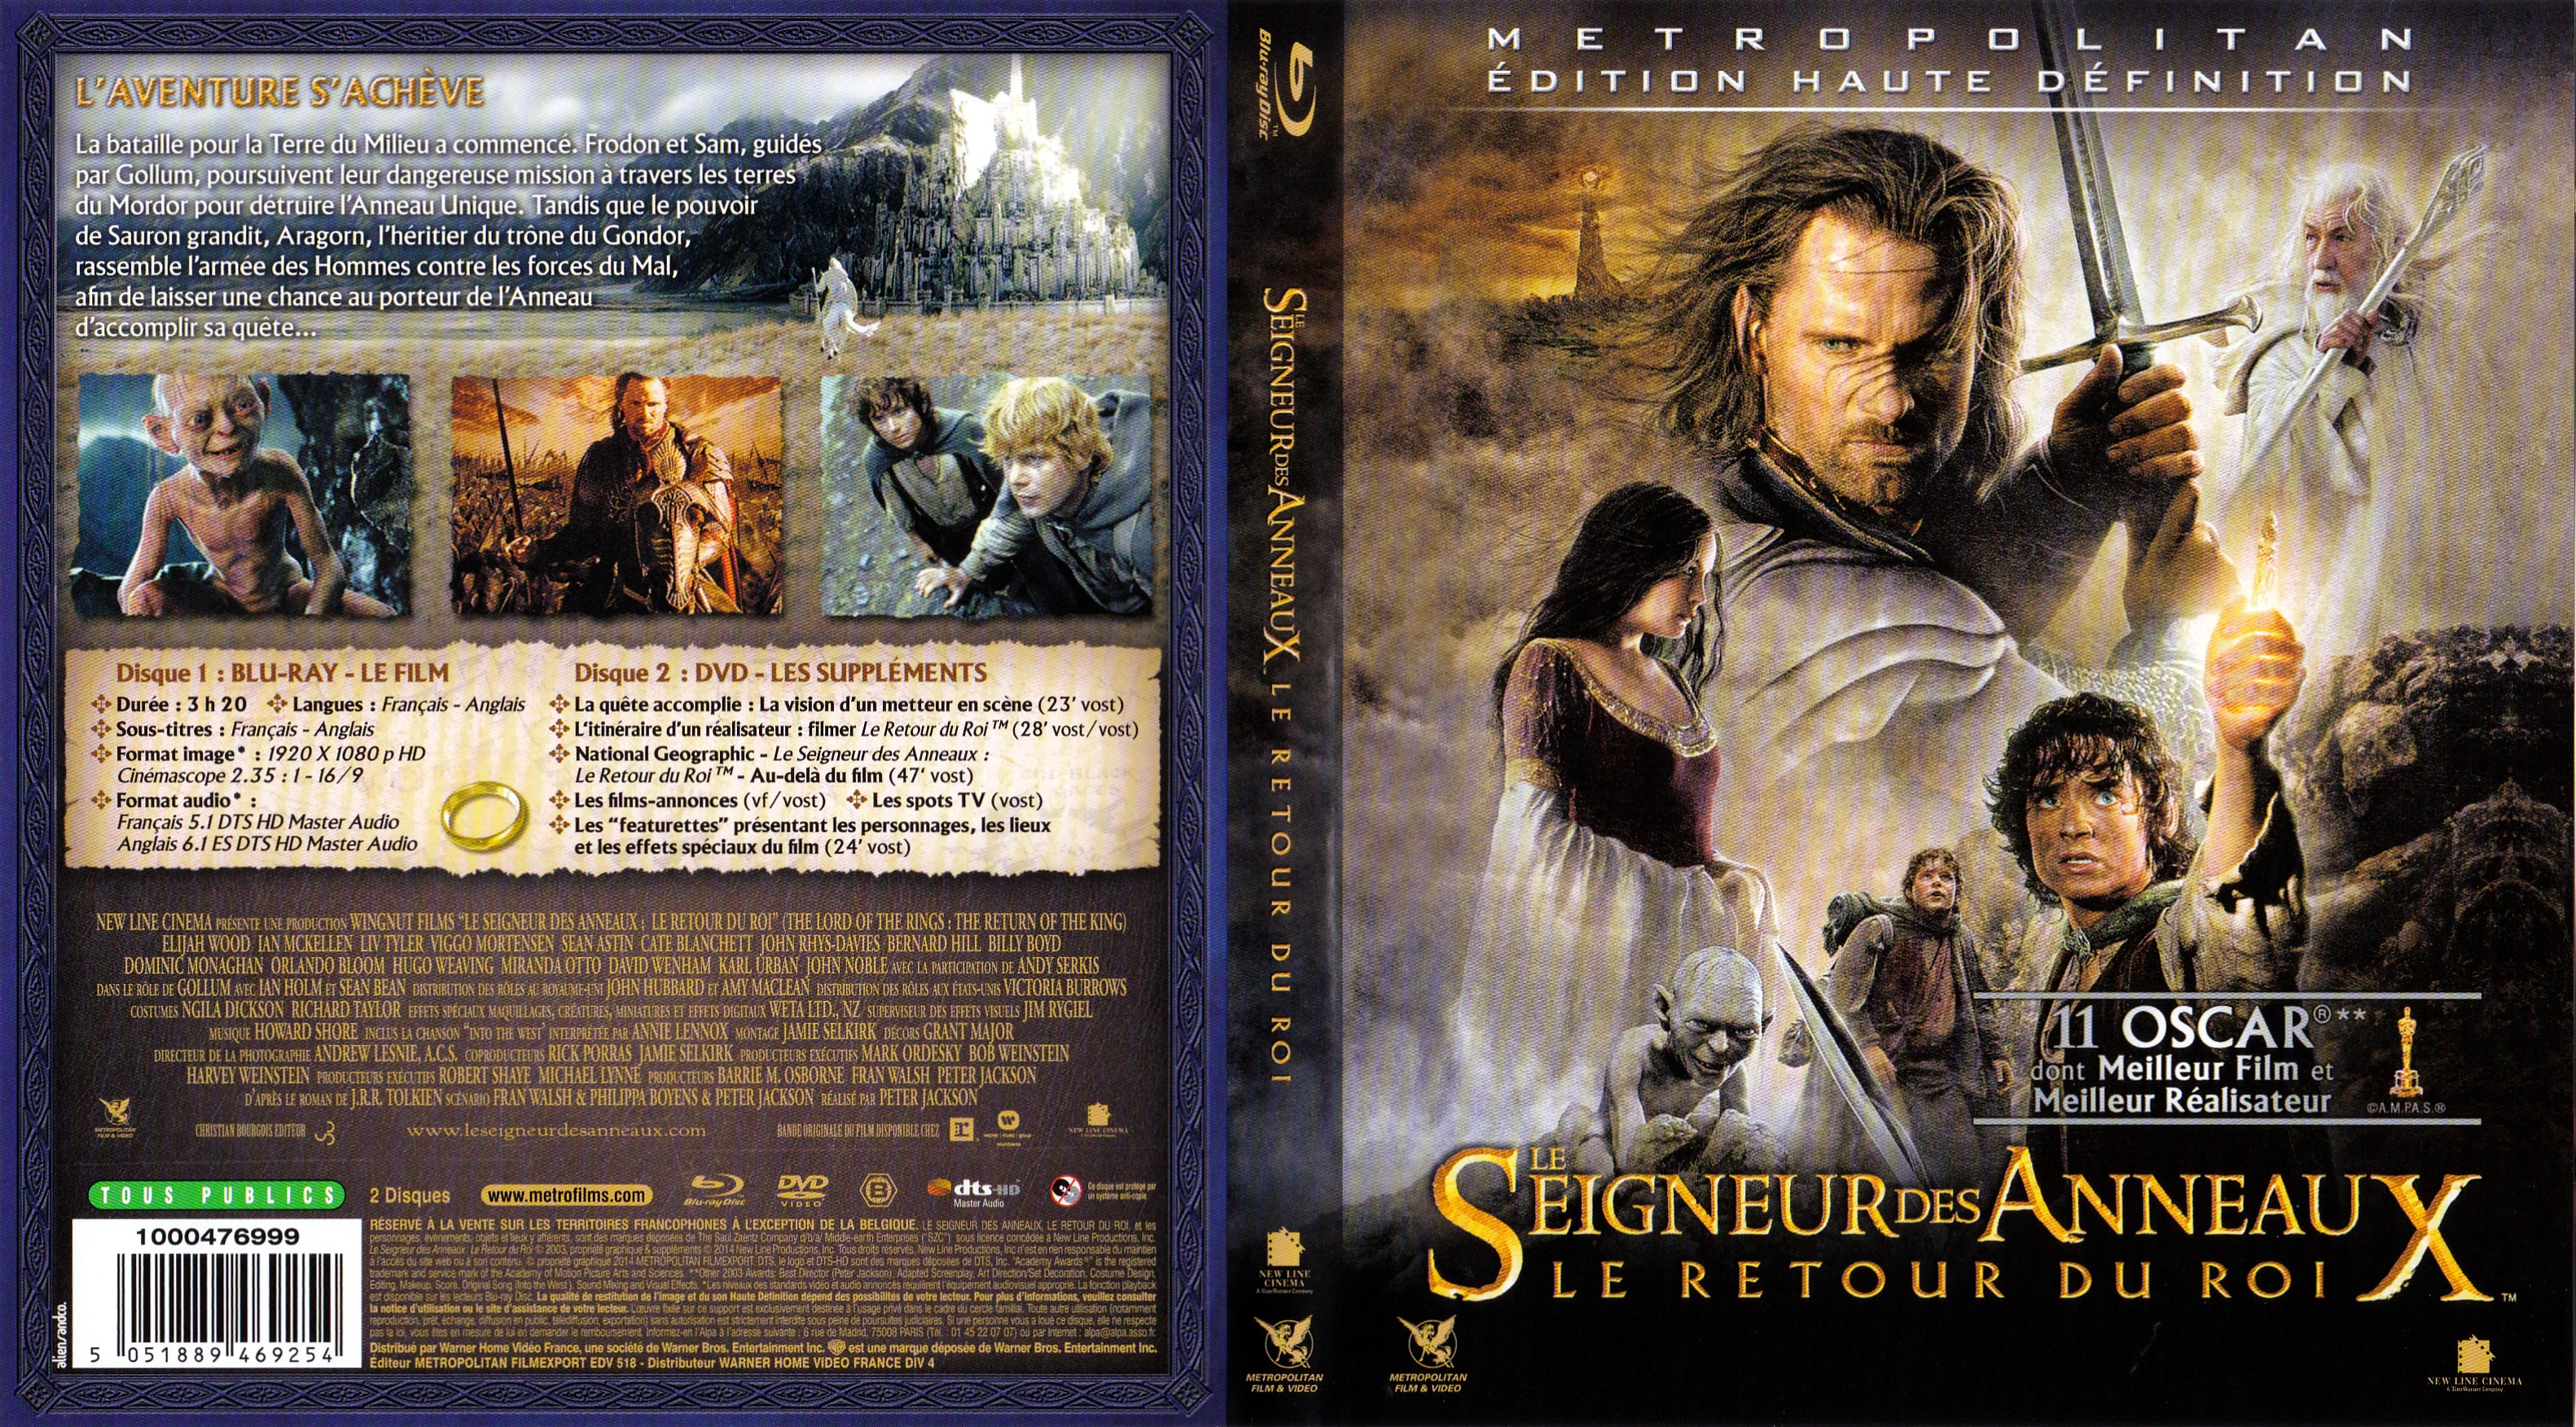 Jaquette DVD Le seigneur des anneaux le retour du roi (BLU-RAY) v3